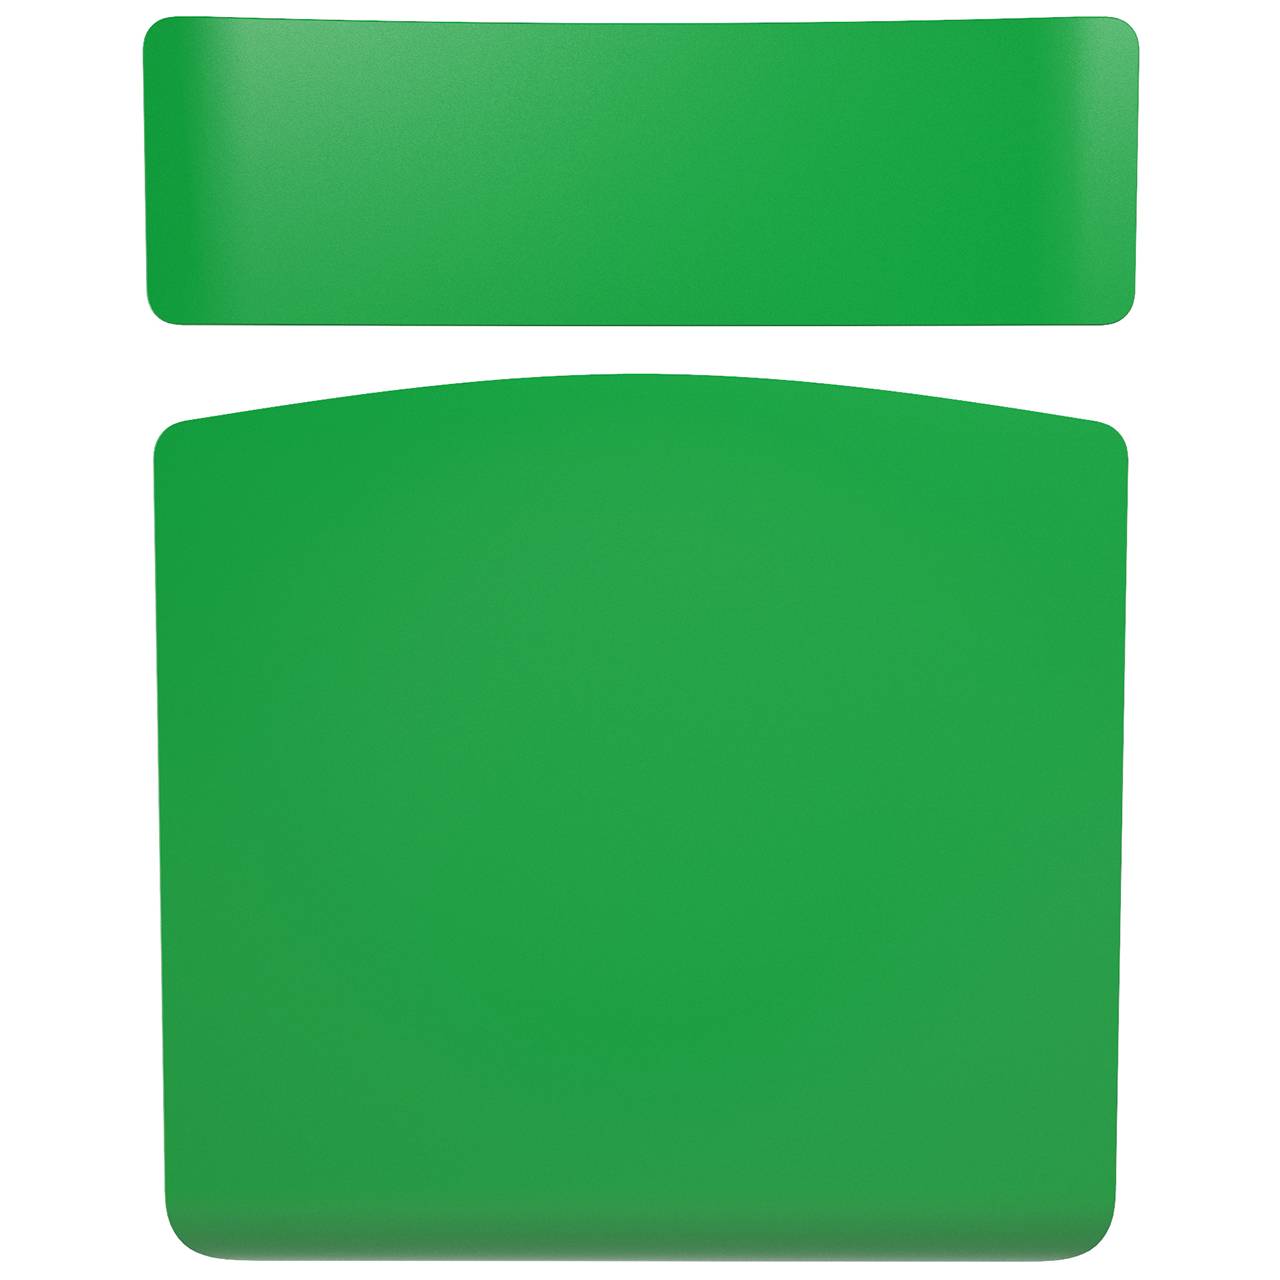 Стул ученический регулируемый (гр. 2-4, 3-5, 4-6 или 5-7) коричневый Зеленый 5-7 прямоугольная